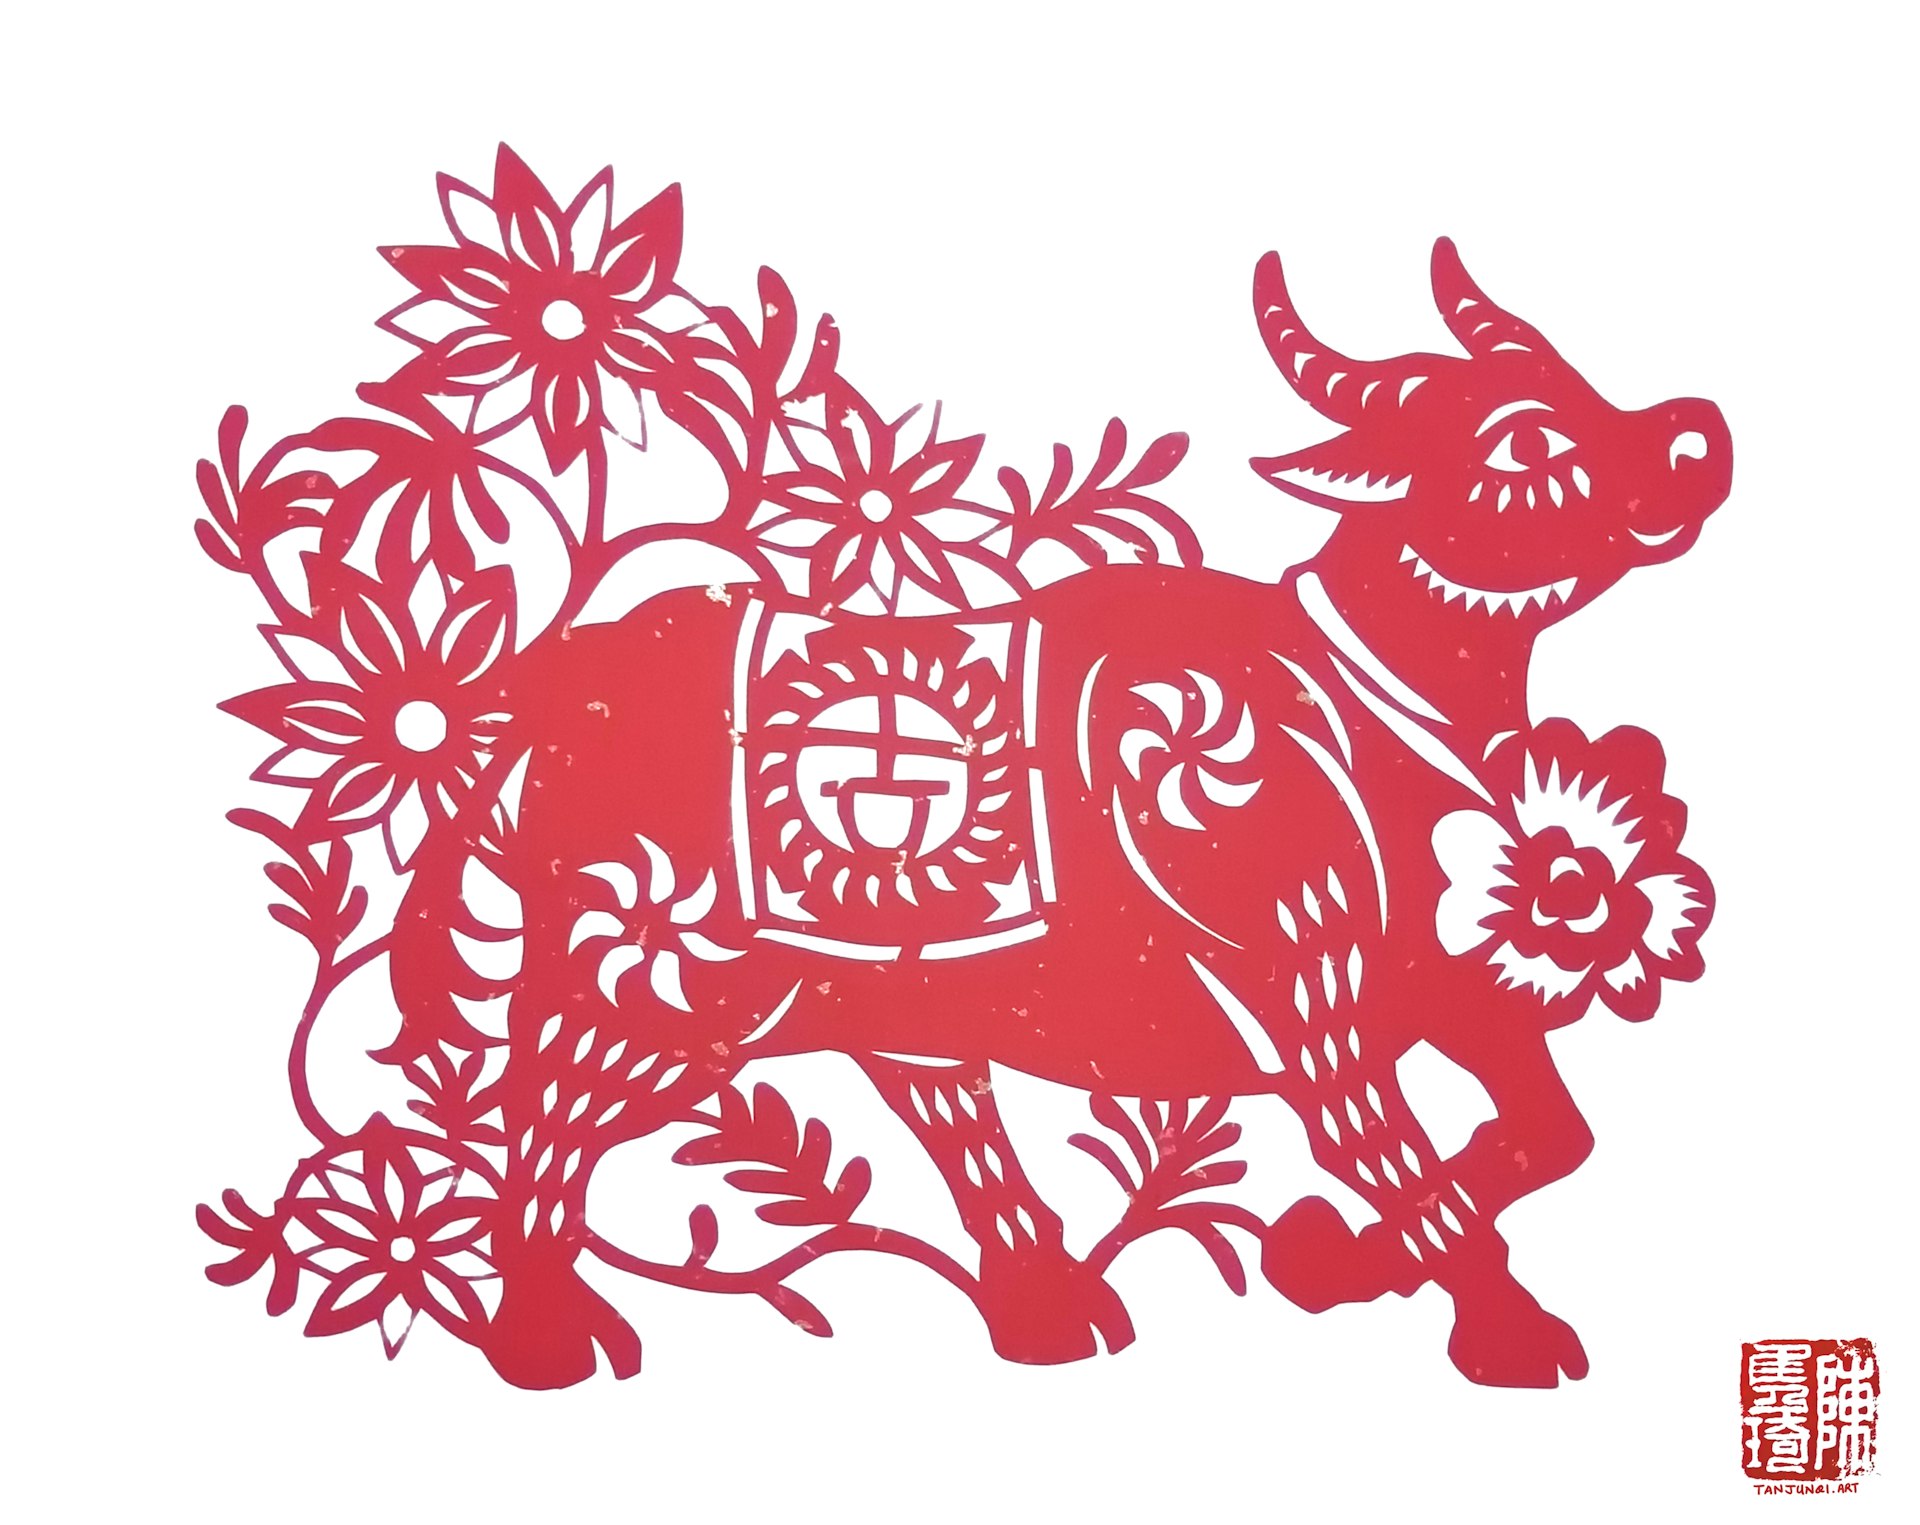 牛的剪纸。牛的颈项套着一朵大红花，背上的坐垫秀着「吉」字；牛正在很自信地往前（右边）走着，四周绽放着红花。